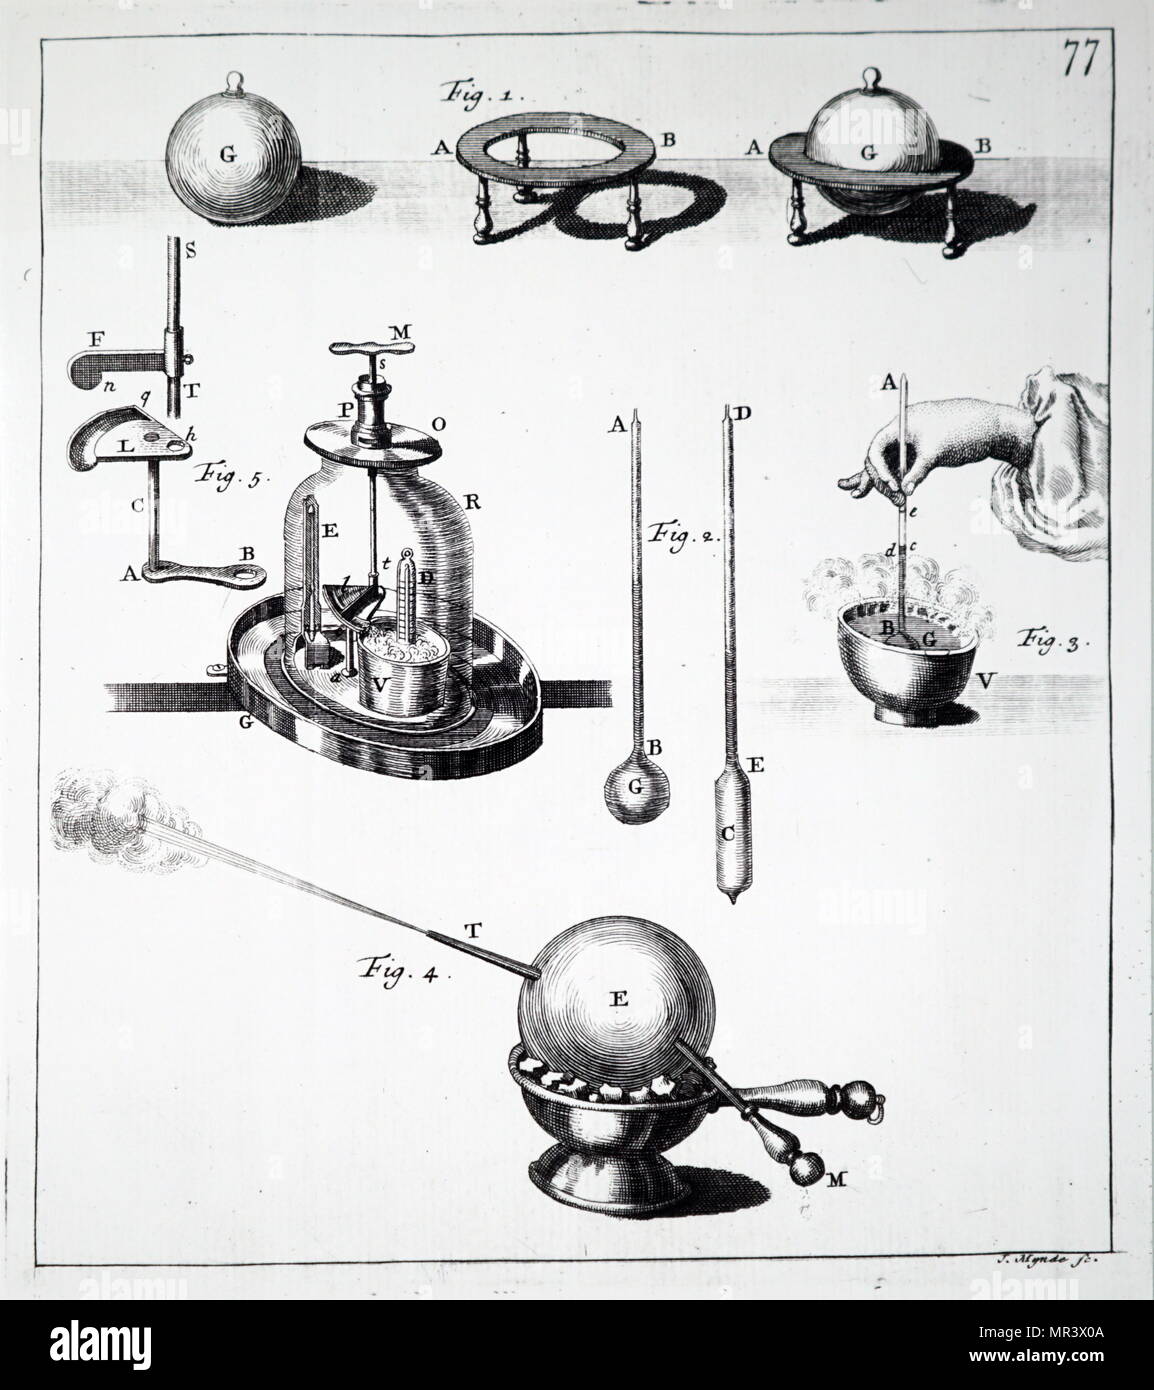 Abbildung zeigt ein Experiment, das zeigt, wie die Erweiterung durch Wärme verursacht wird. Vom 18. Jahrhundert Stockfoto